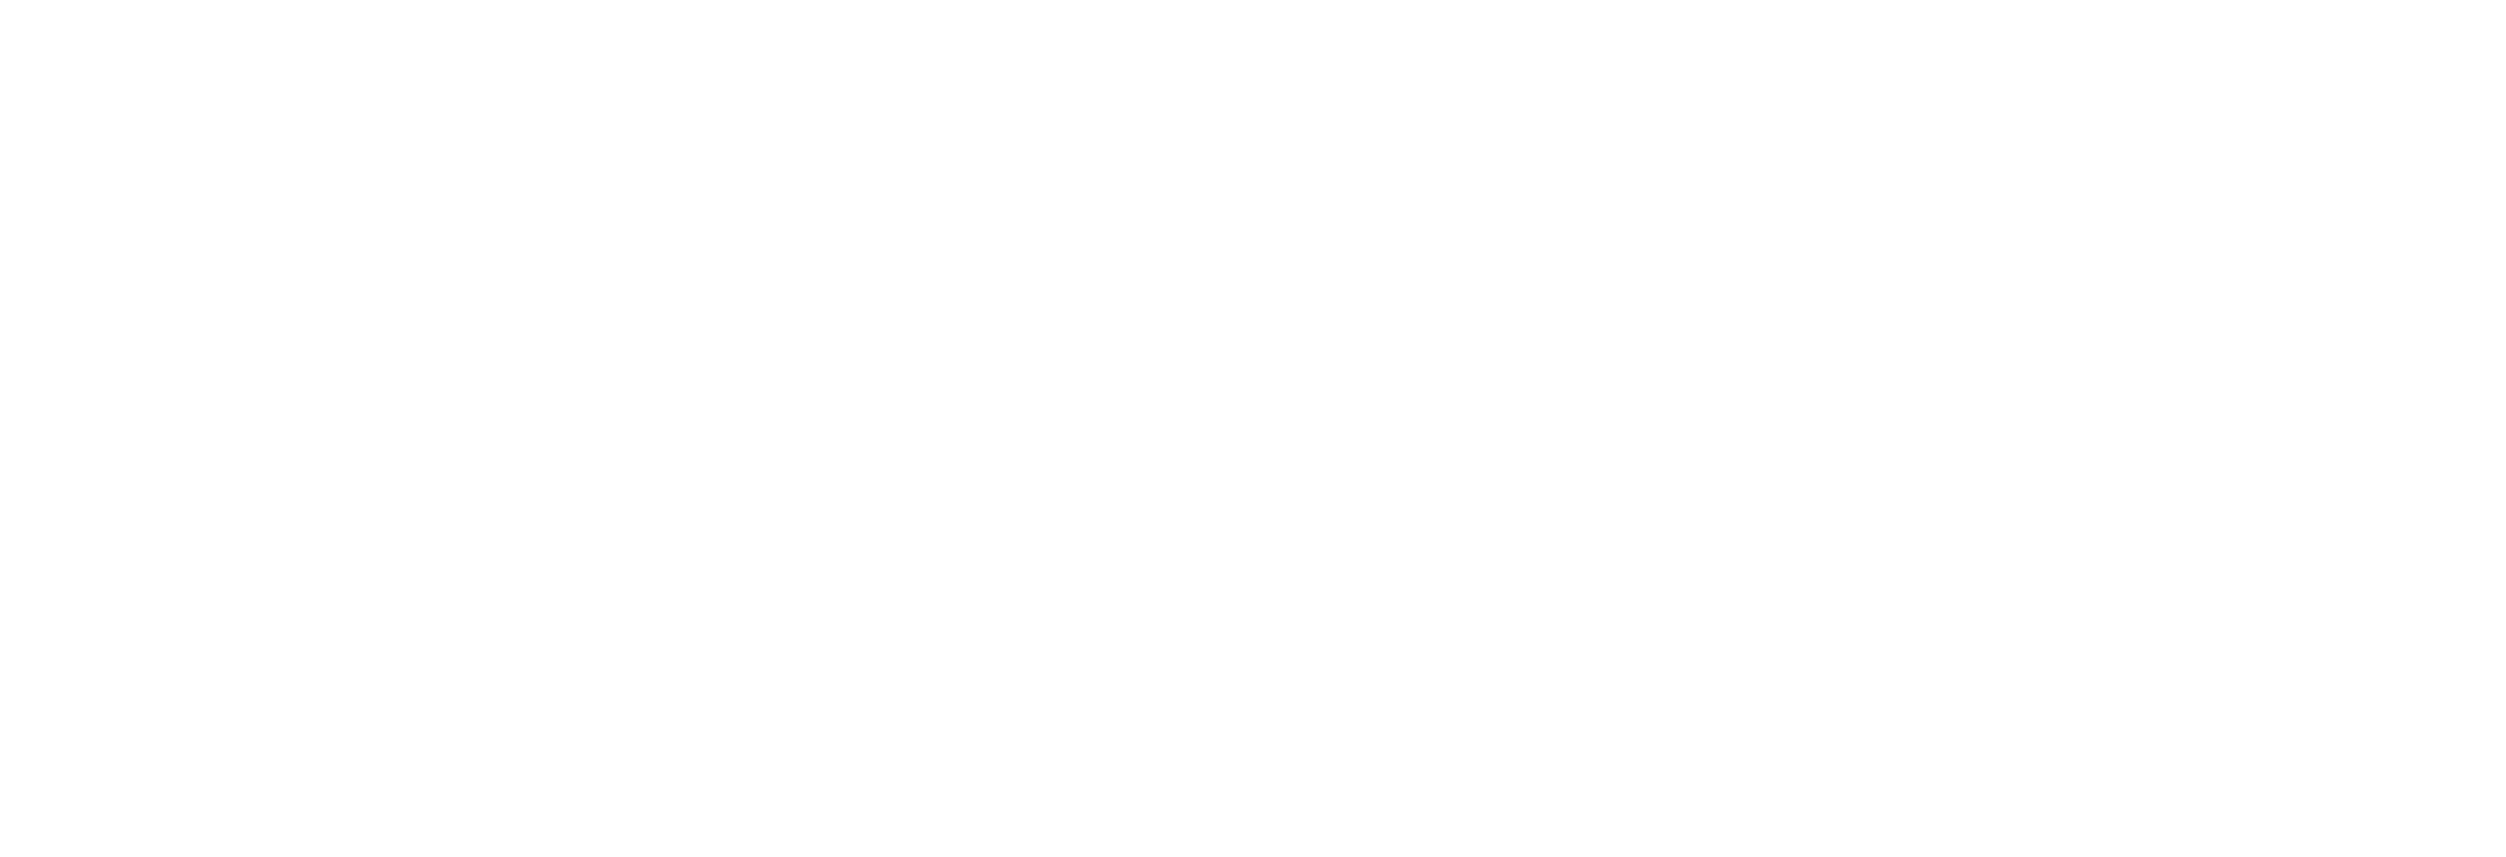 Logo-Critizr-White (2)-1